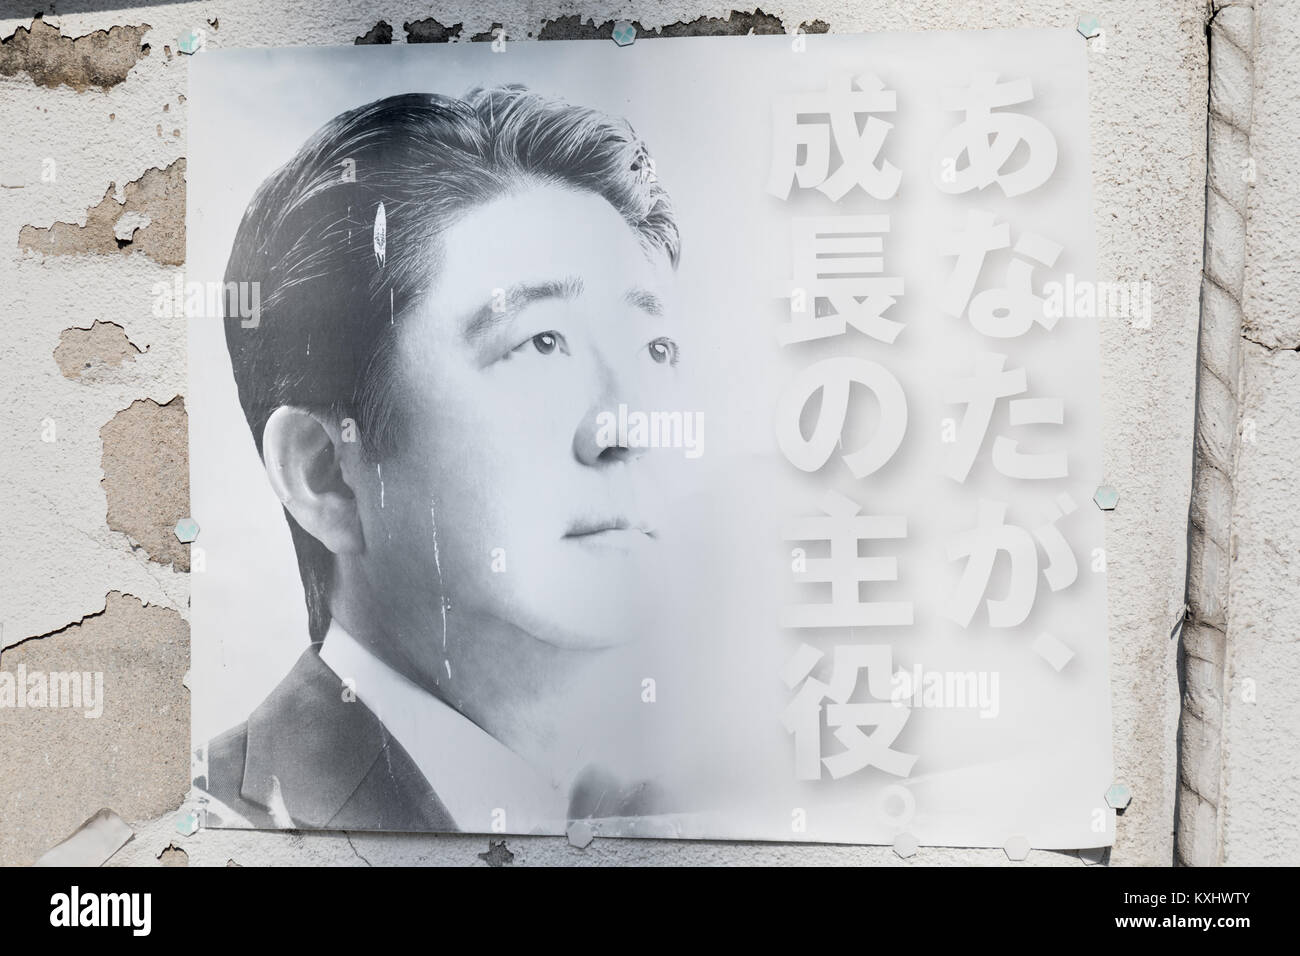 Desapareció Shinzo Abe póster, Nakano, Tokio Foto de stock